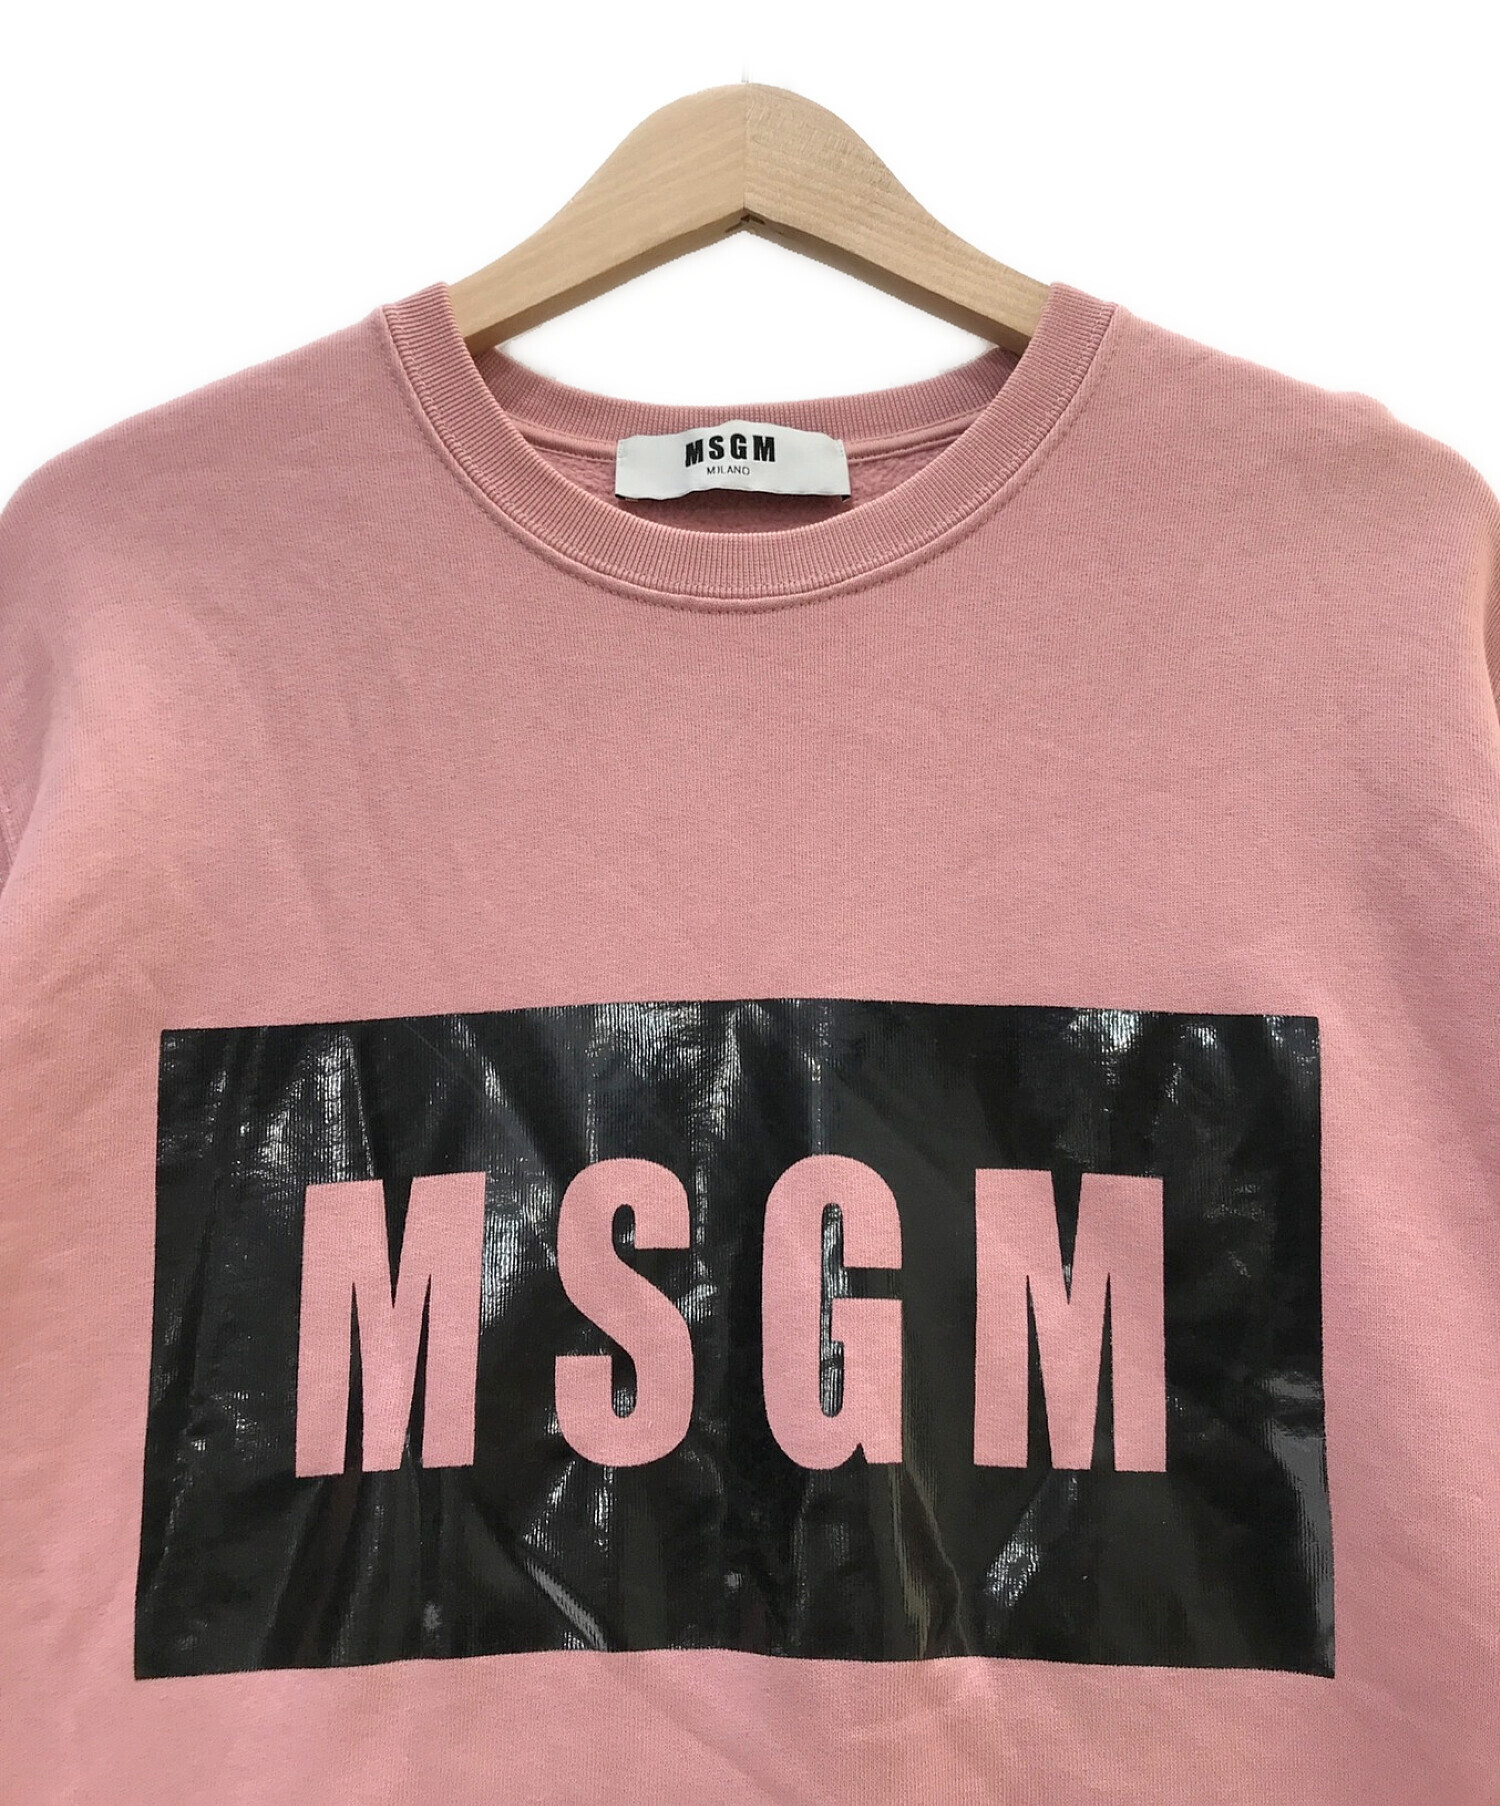 MSGM (エムエスジーエム) ロゴプリントスウェット ピンク サイズ:S